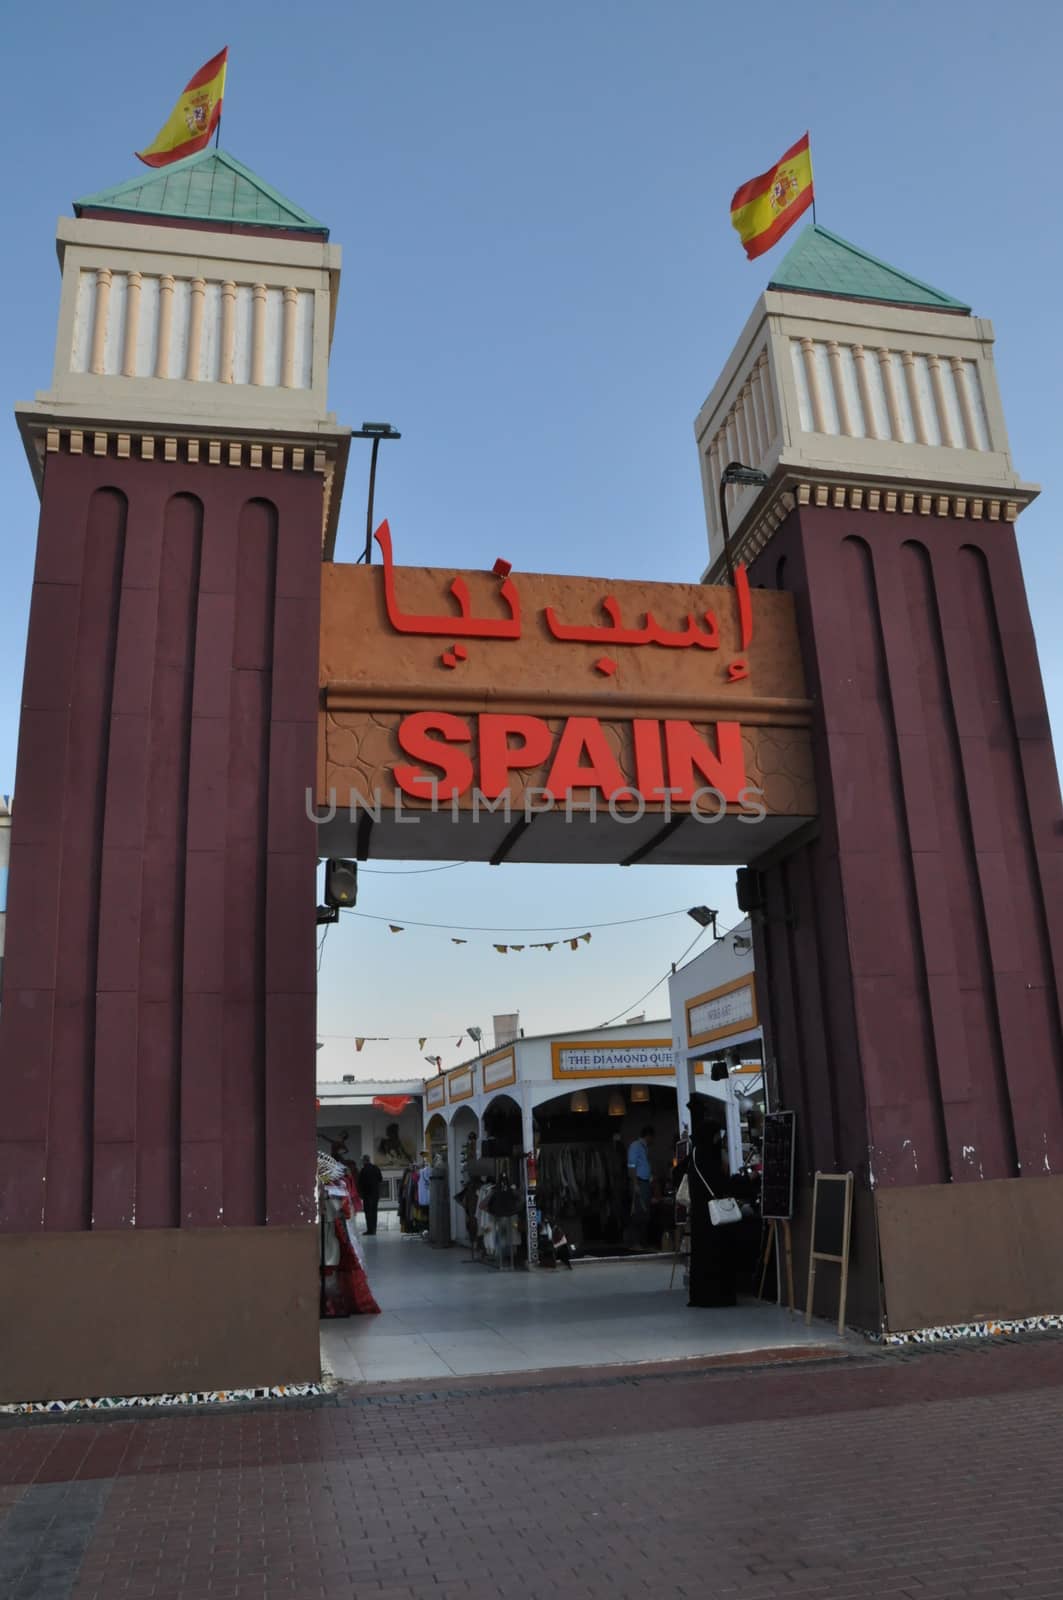 Spain pavilion at Global Village in Dubai, UAE by sainaniritu